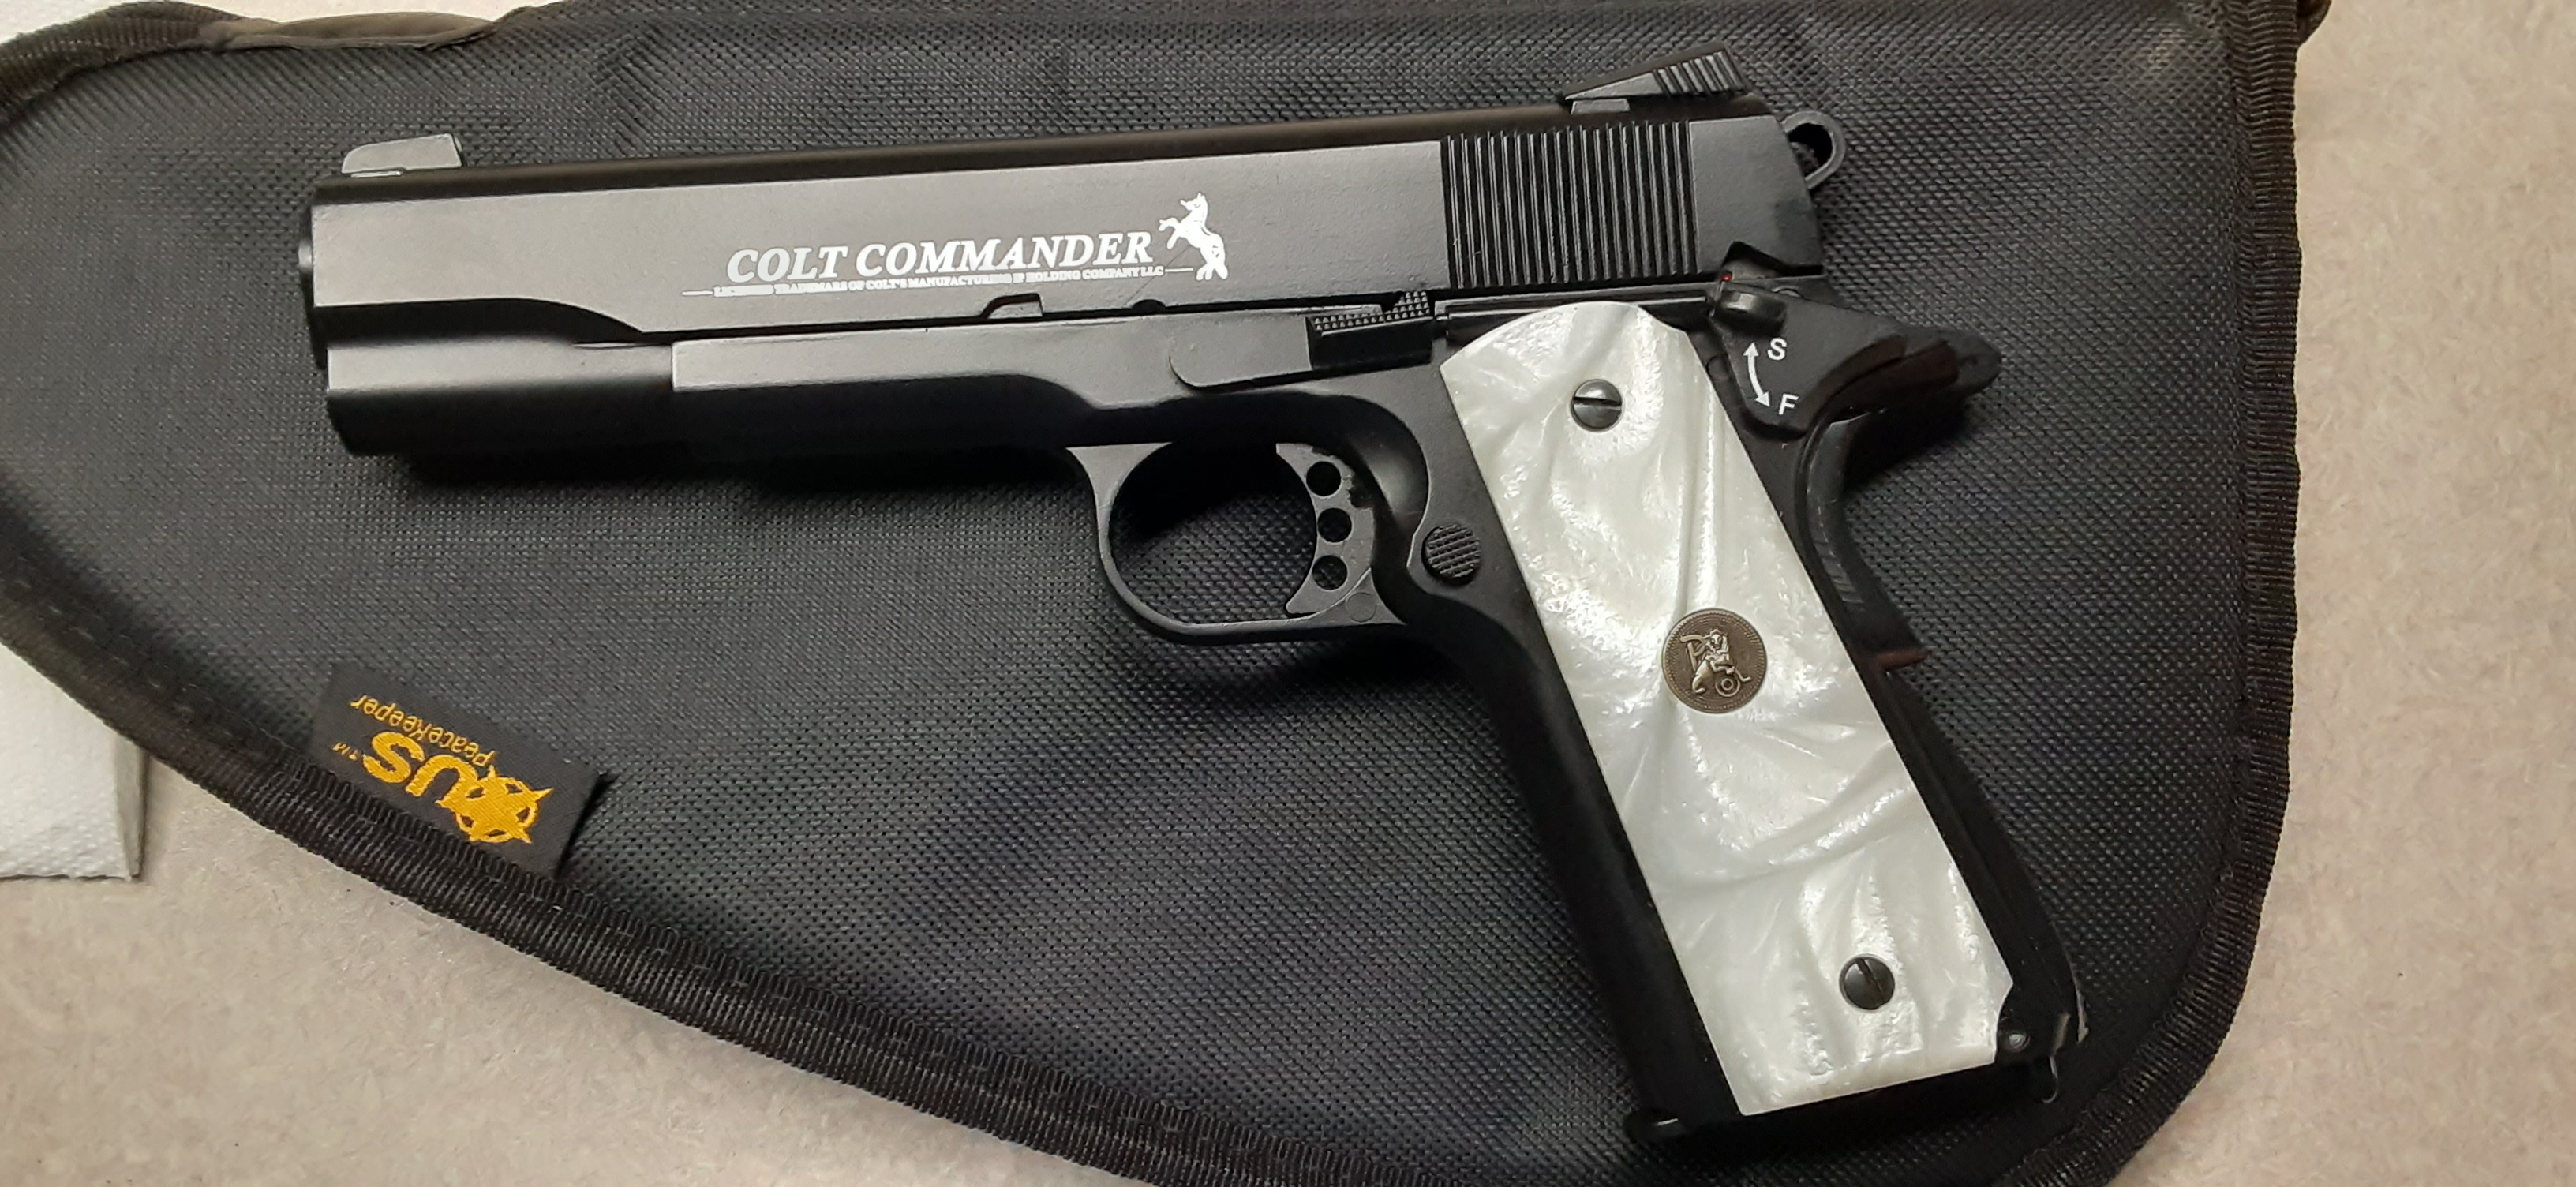 Colt Commander 1911.jpg